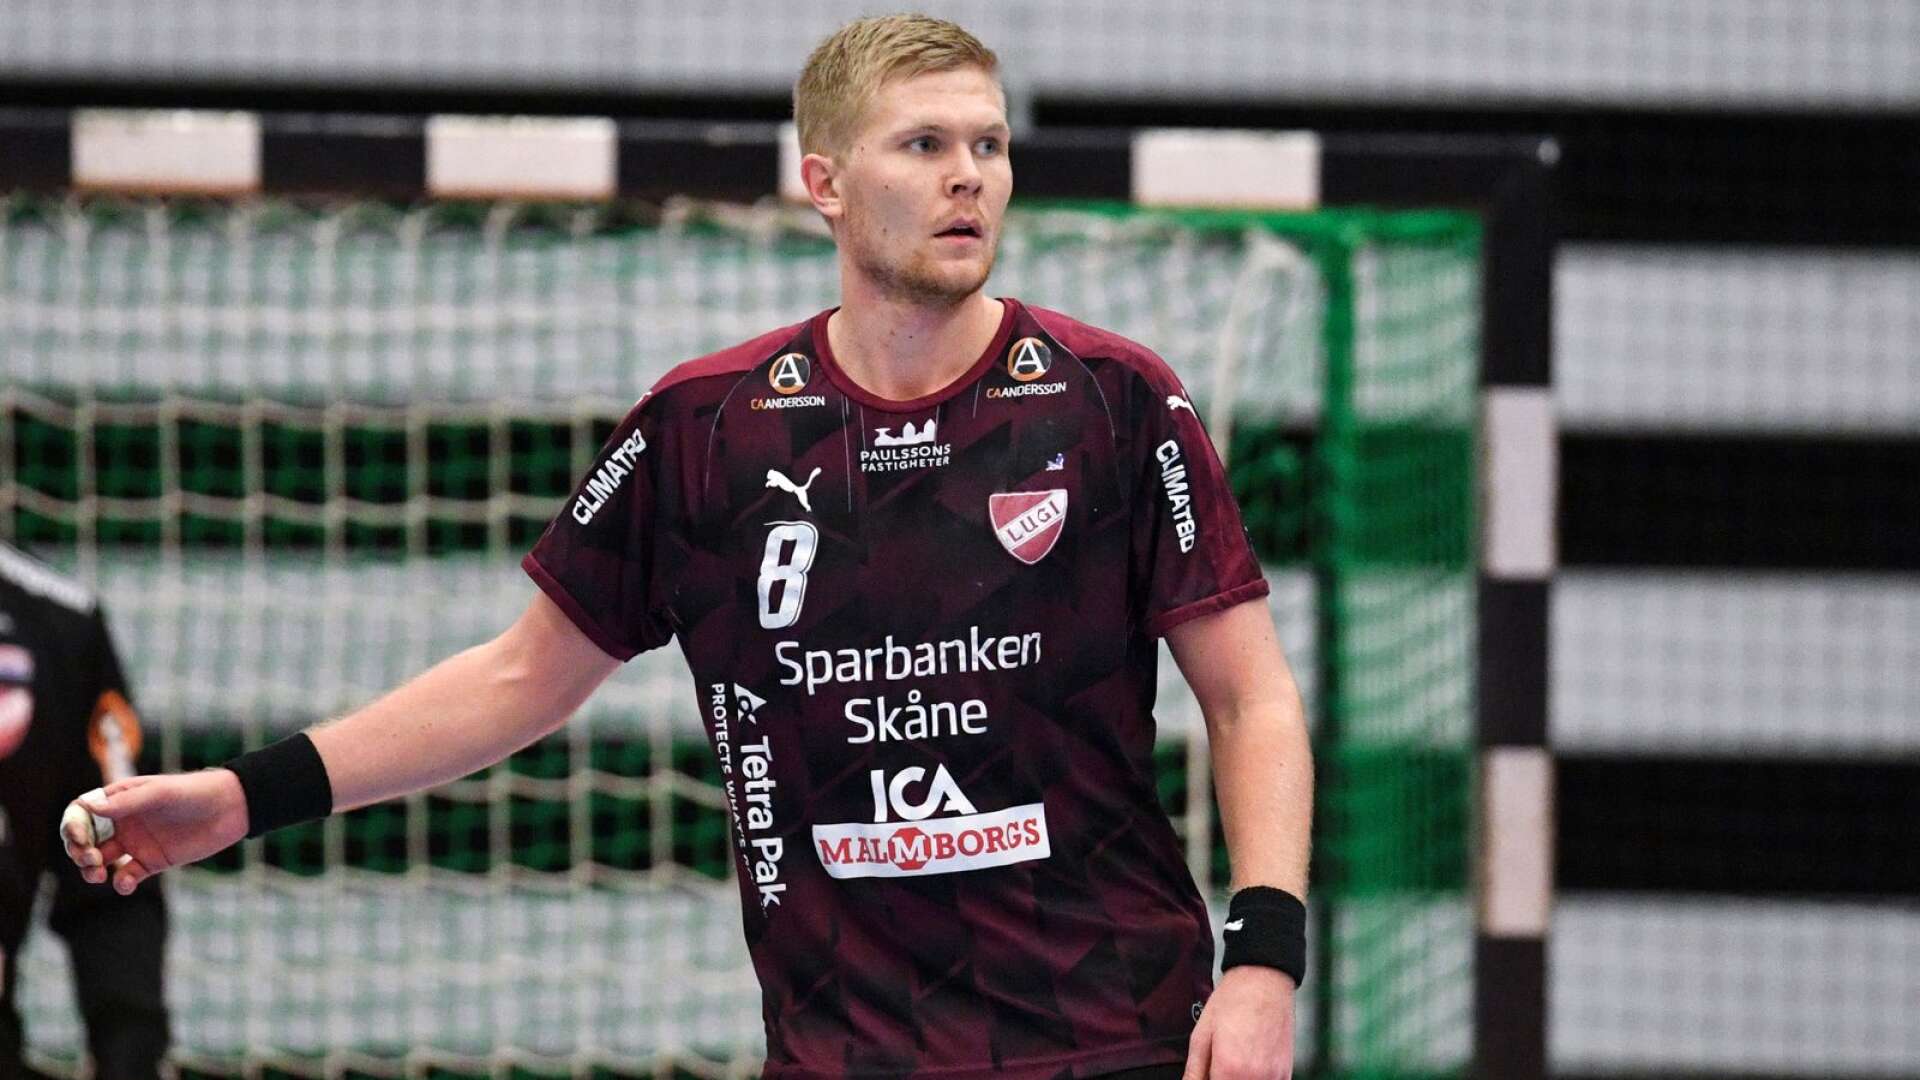 Markus Sjöbrink spelade för Lugi innan det blev Schweiz och nu väntar IFK Skövde för mittsexan.